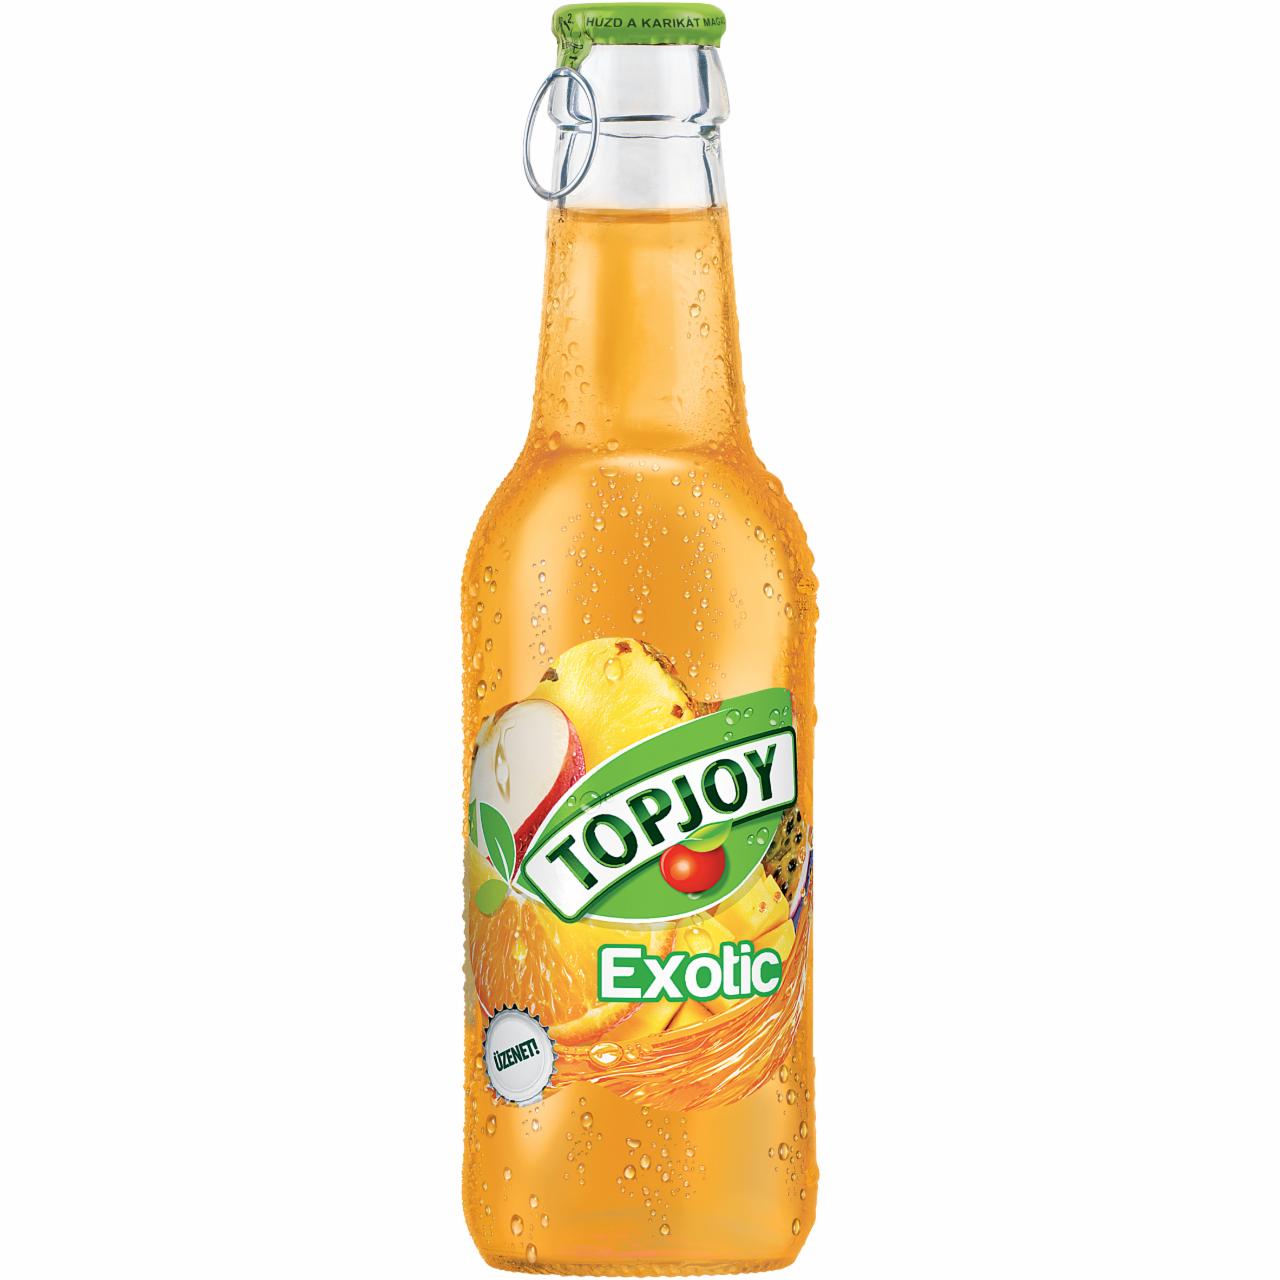 Képek - Topjoy Exotic vegyes gyümölcs ital 250 ml